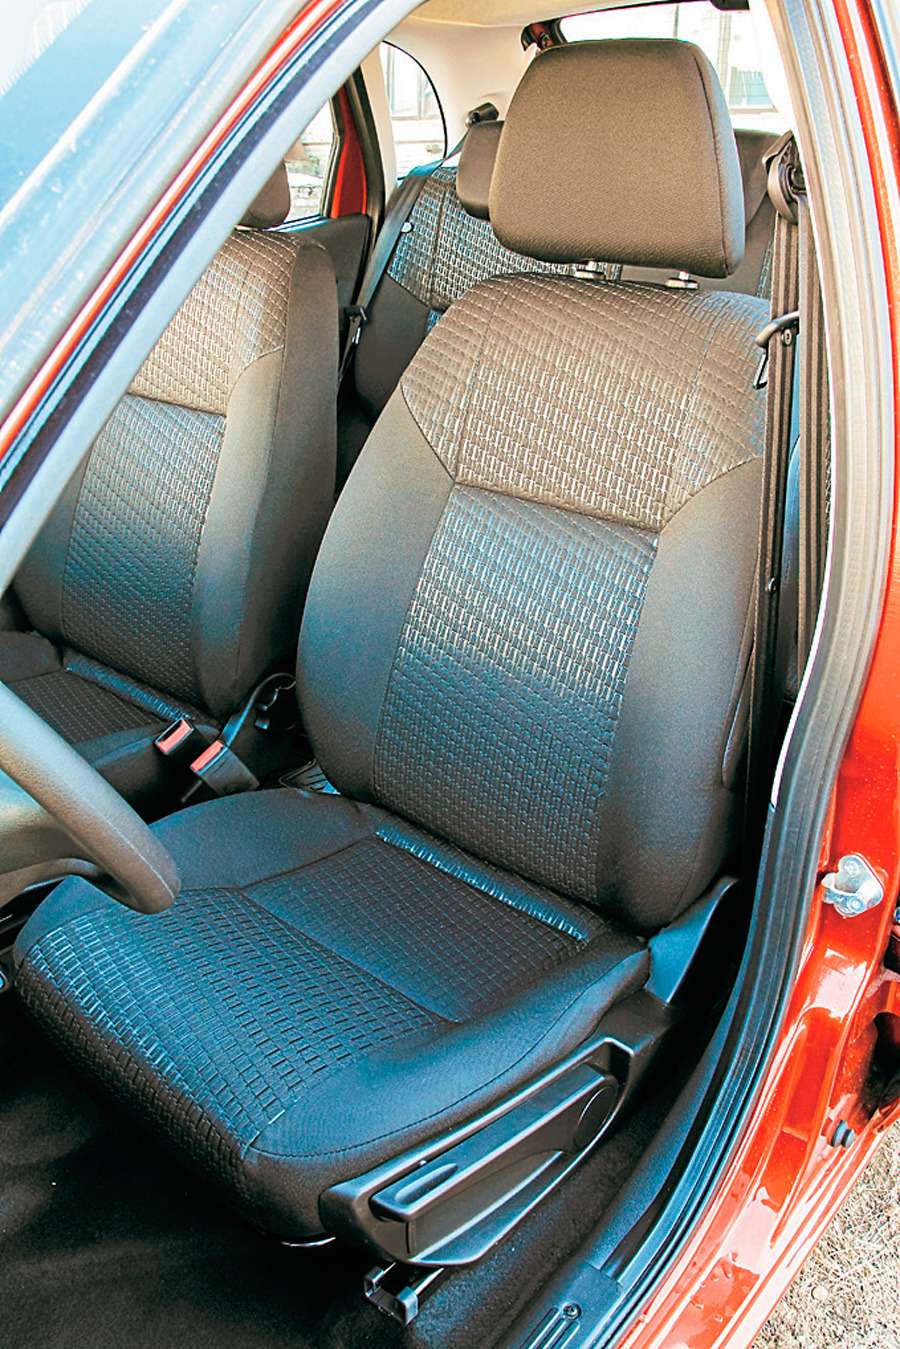 Datsun mi-DO. Новые передние кресла производства фирмы АвтоВАЗагрегат, которые ставятся на mi-DO в комплек- тации Dream, понравились приятной плотной набивкой и неплохой боковой поддержкой.